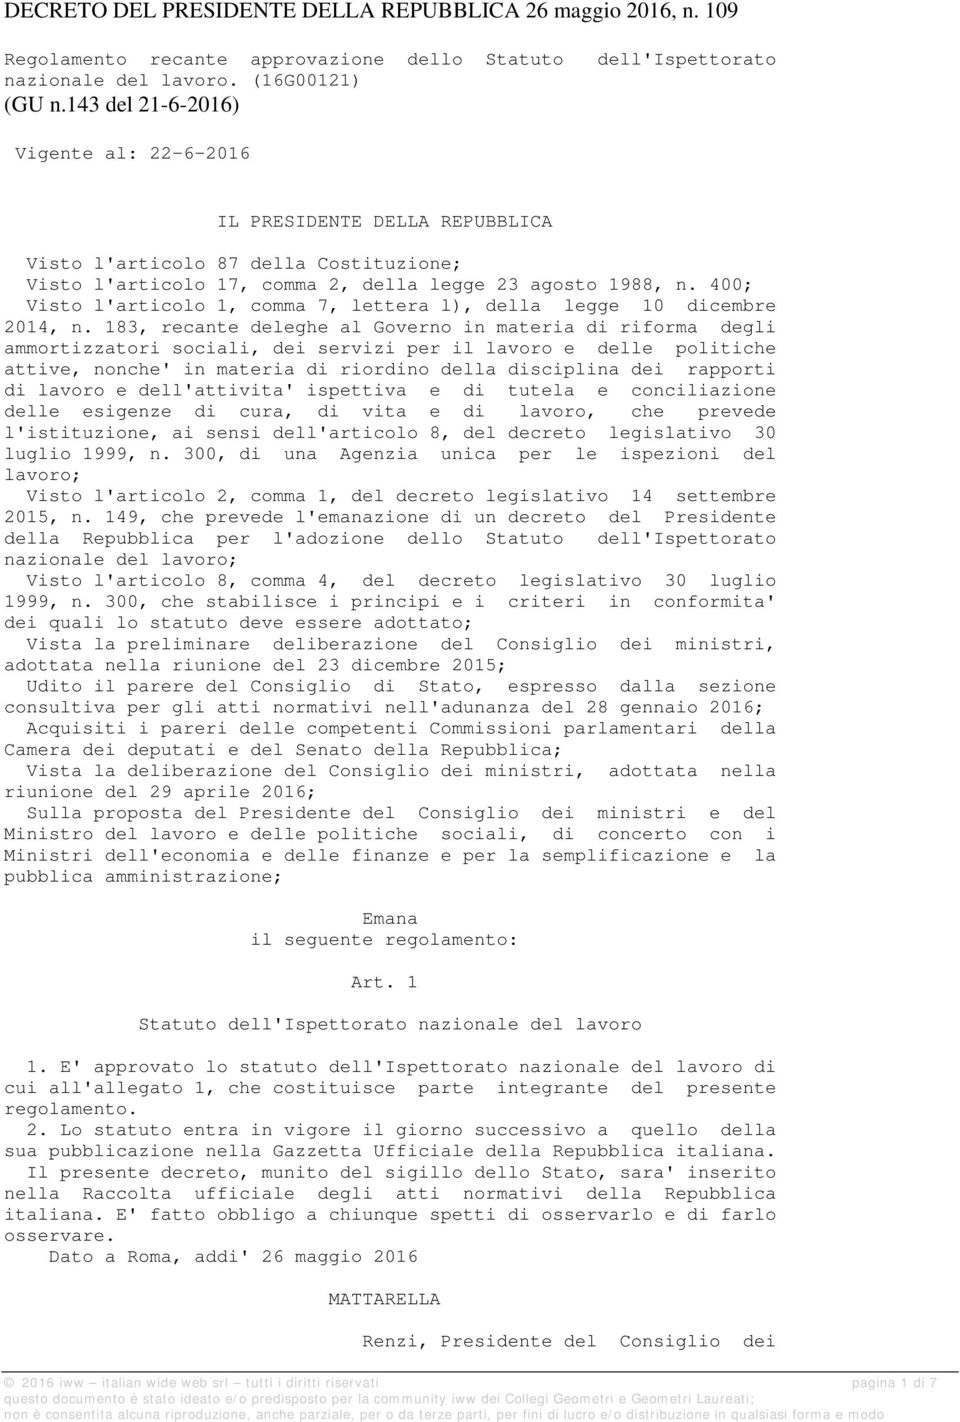 400; Visto l'articolo 1, comma 7, lettera l), della legge 10 dicembre 2014, n.